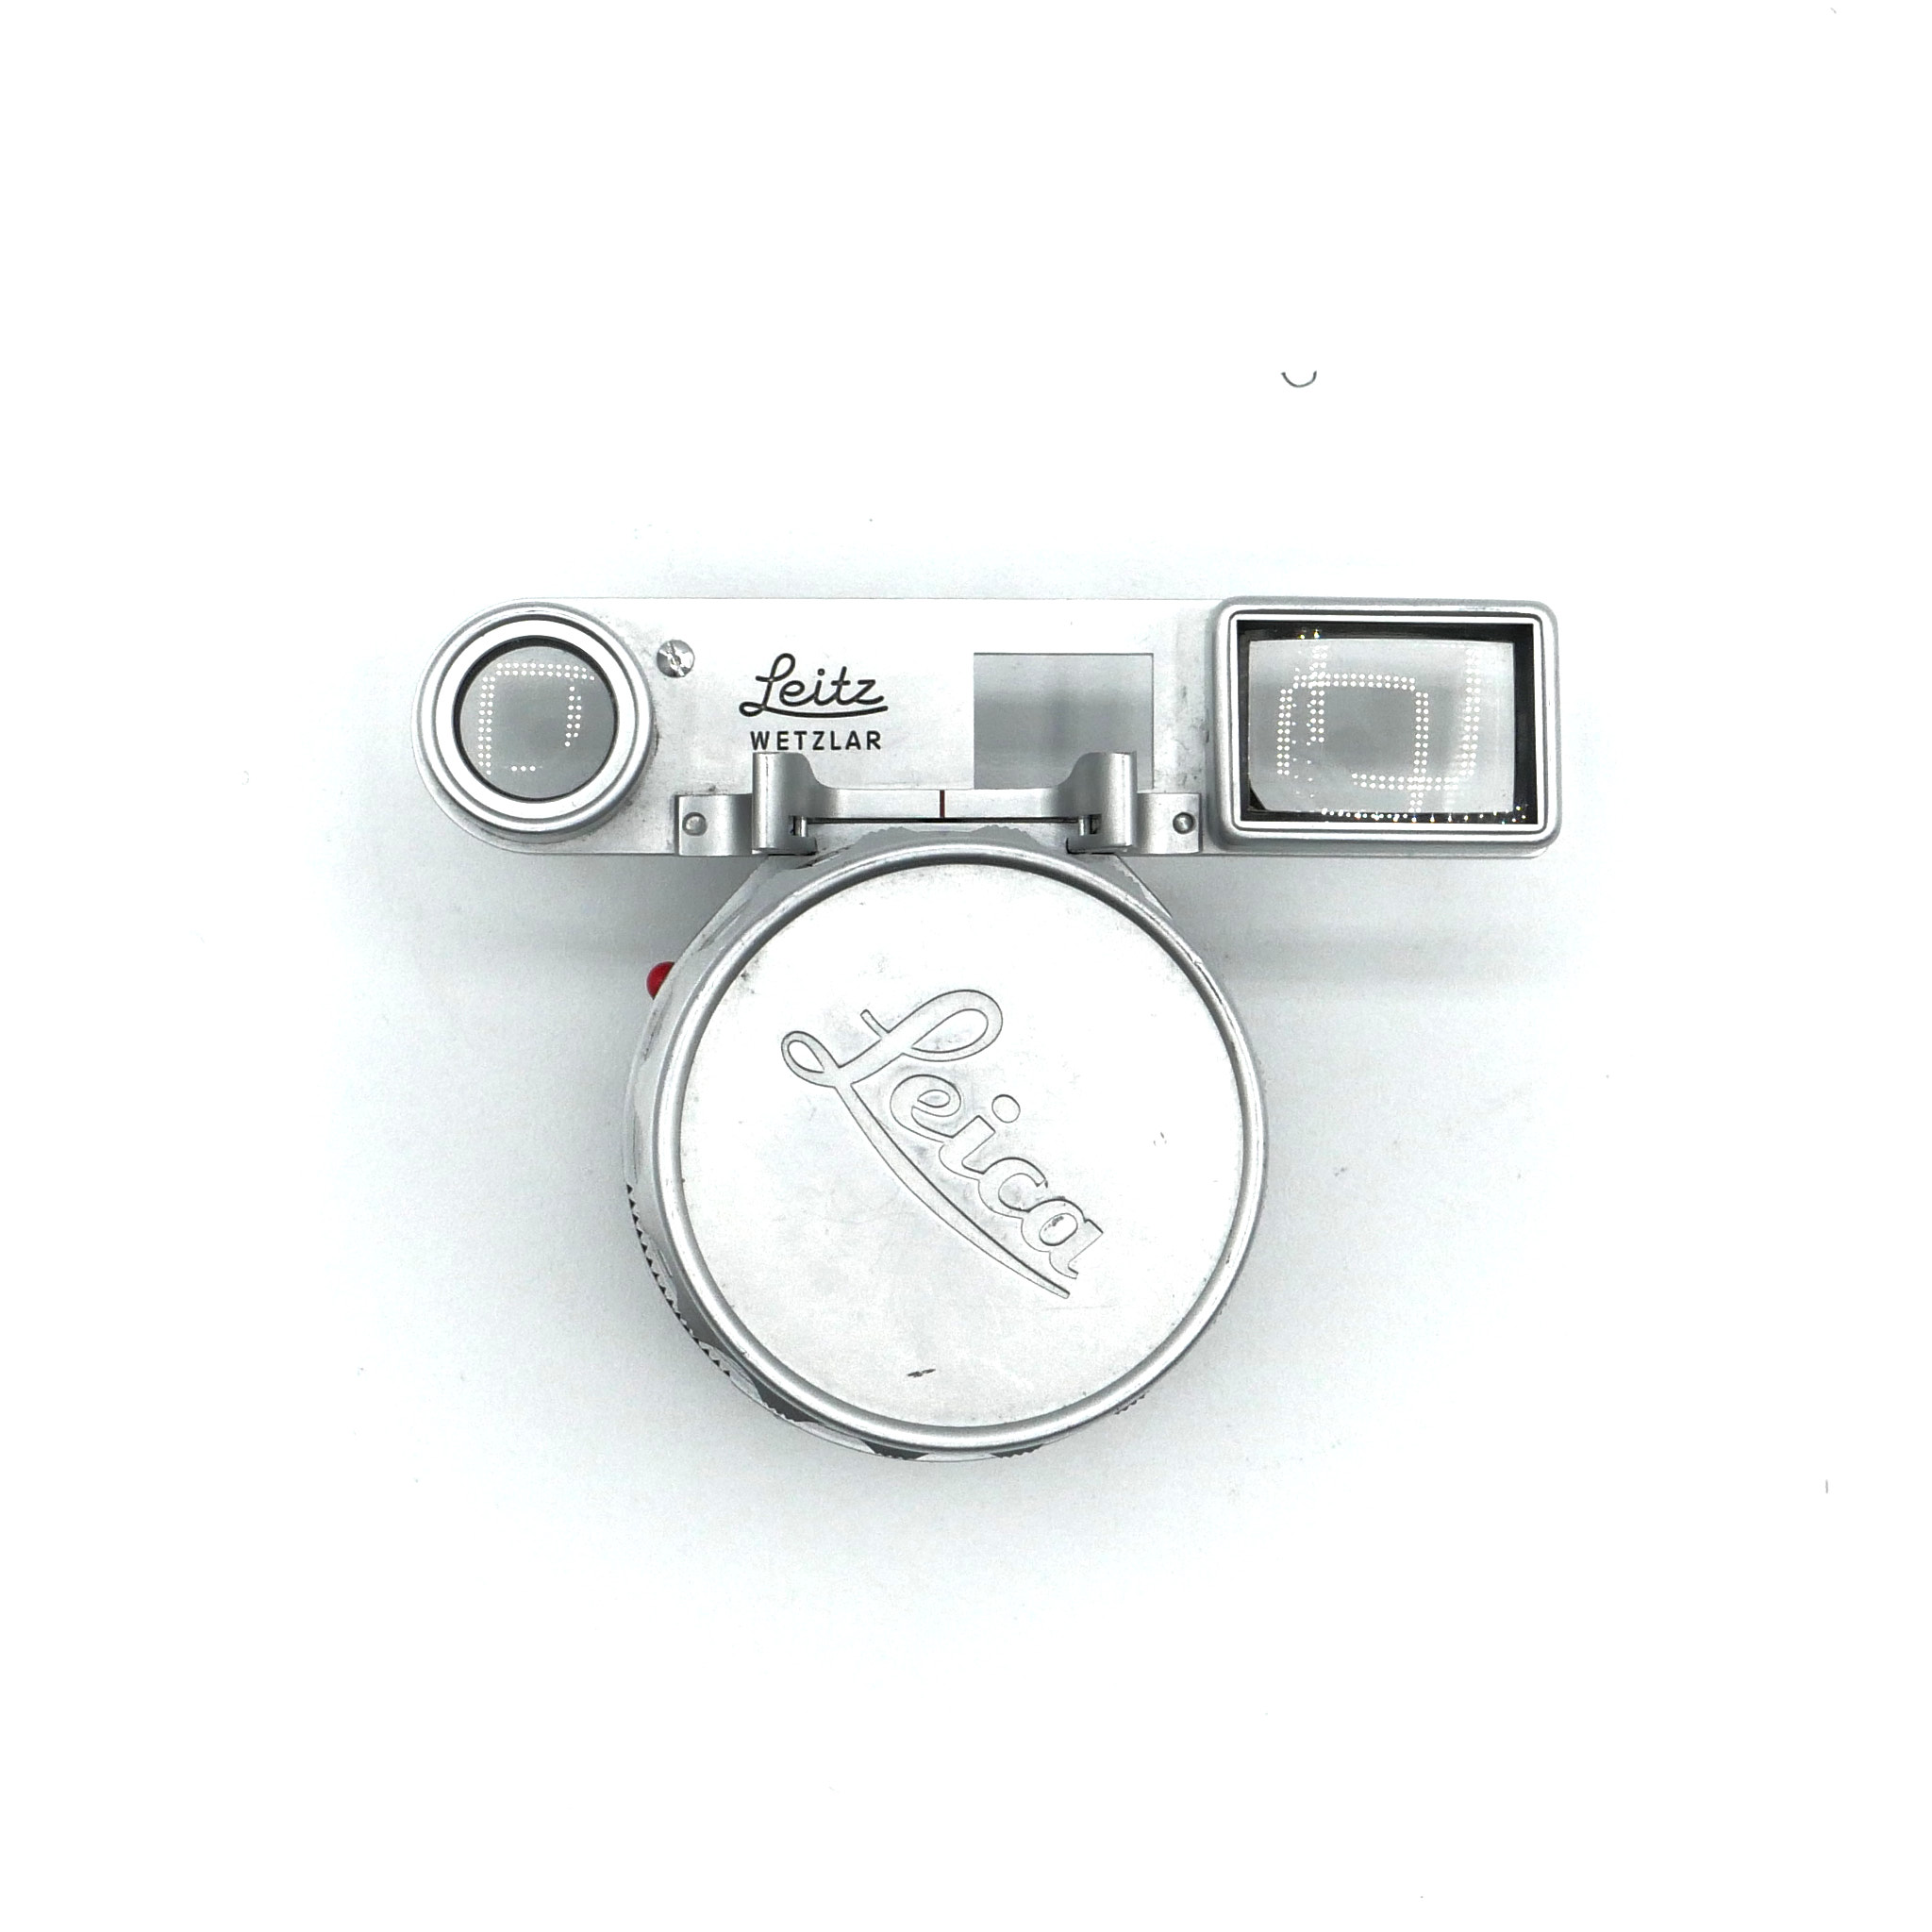 Leica Summicron 50mm f/2 - Dual Focus Range